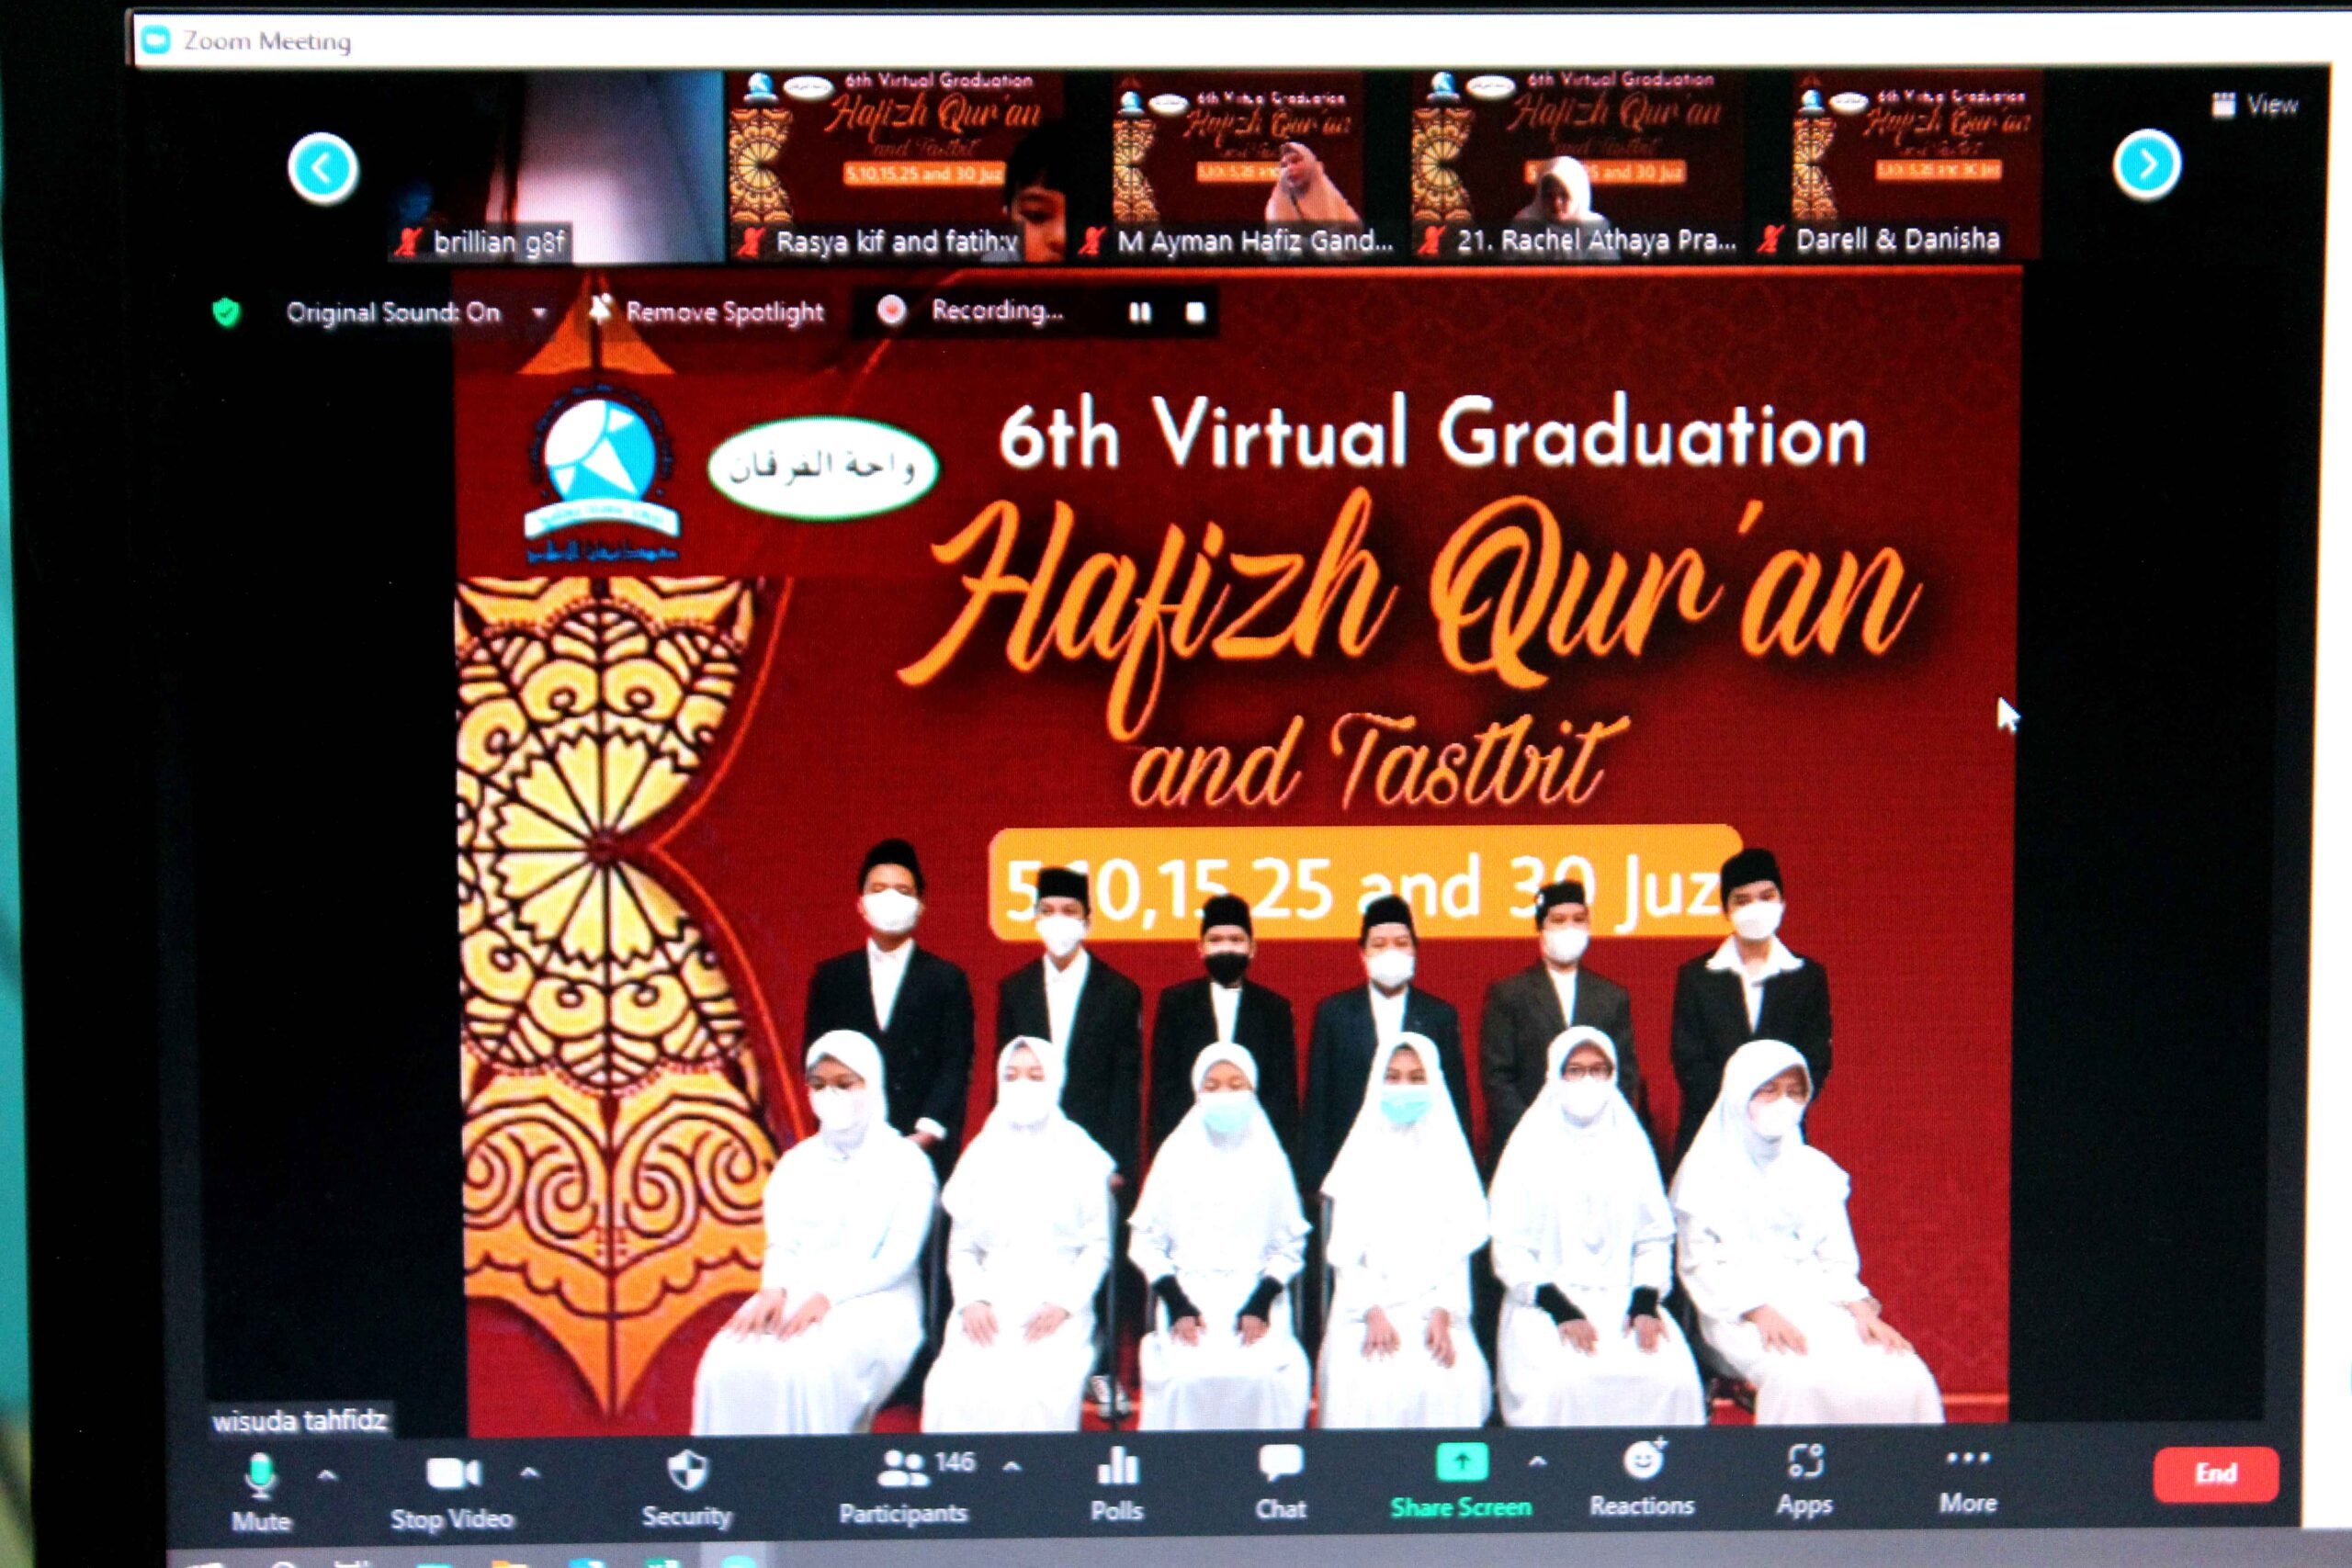 Hafizh Quran Graduation Syafana Islamic School Diselenggarakan Secara Virtual